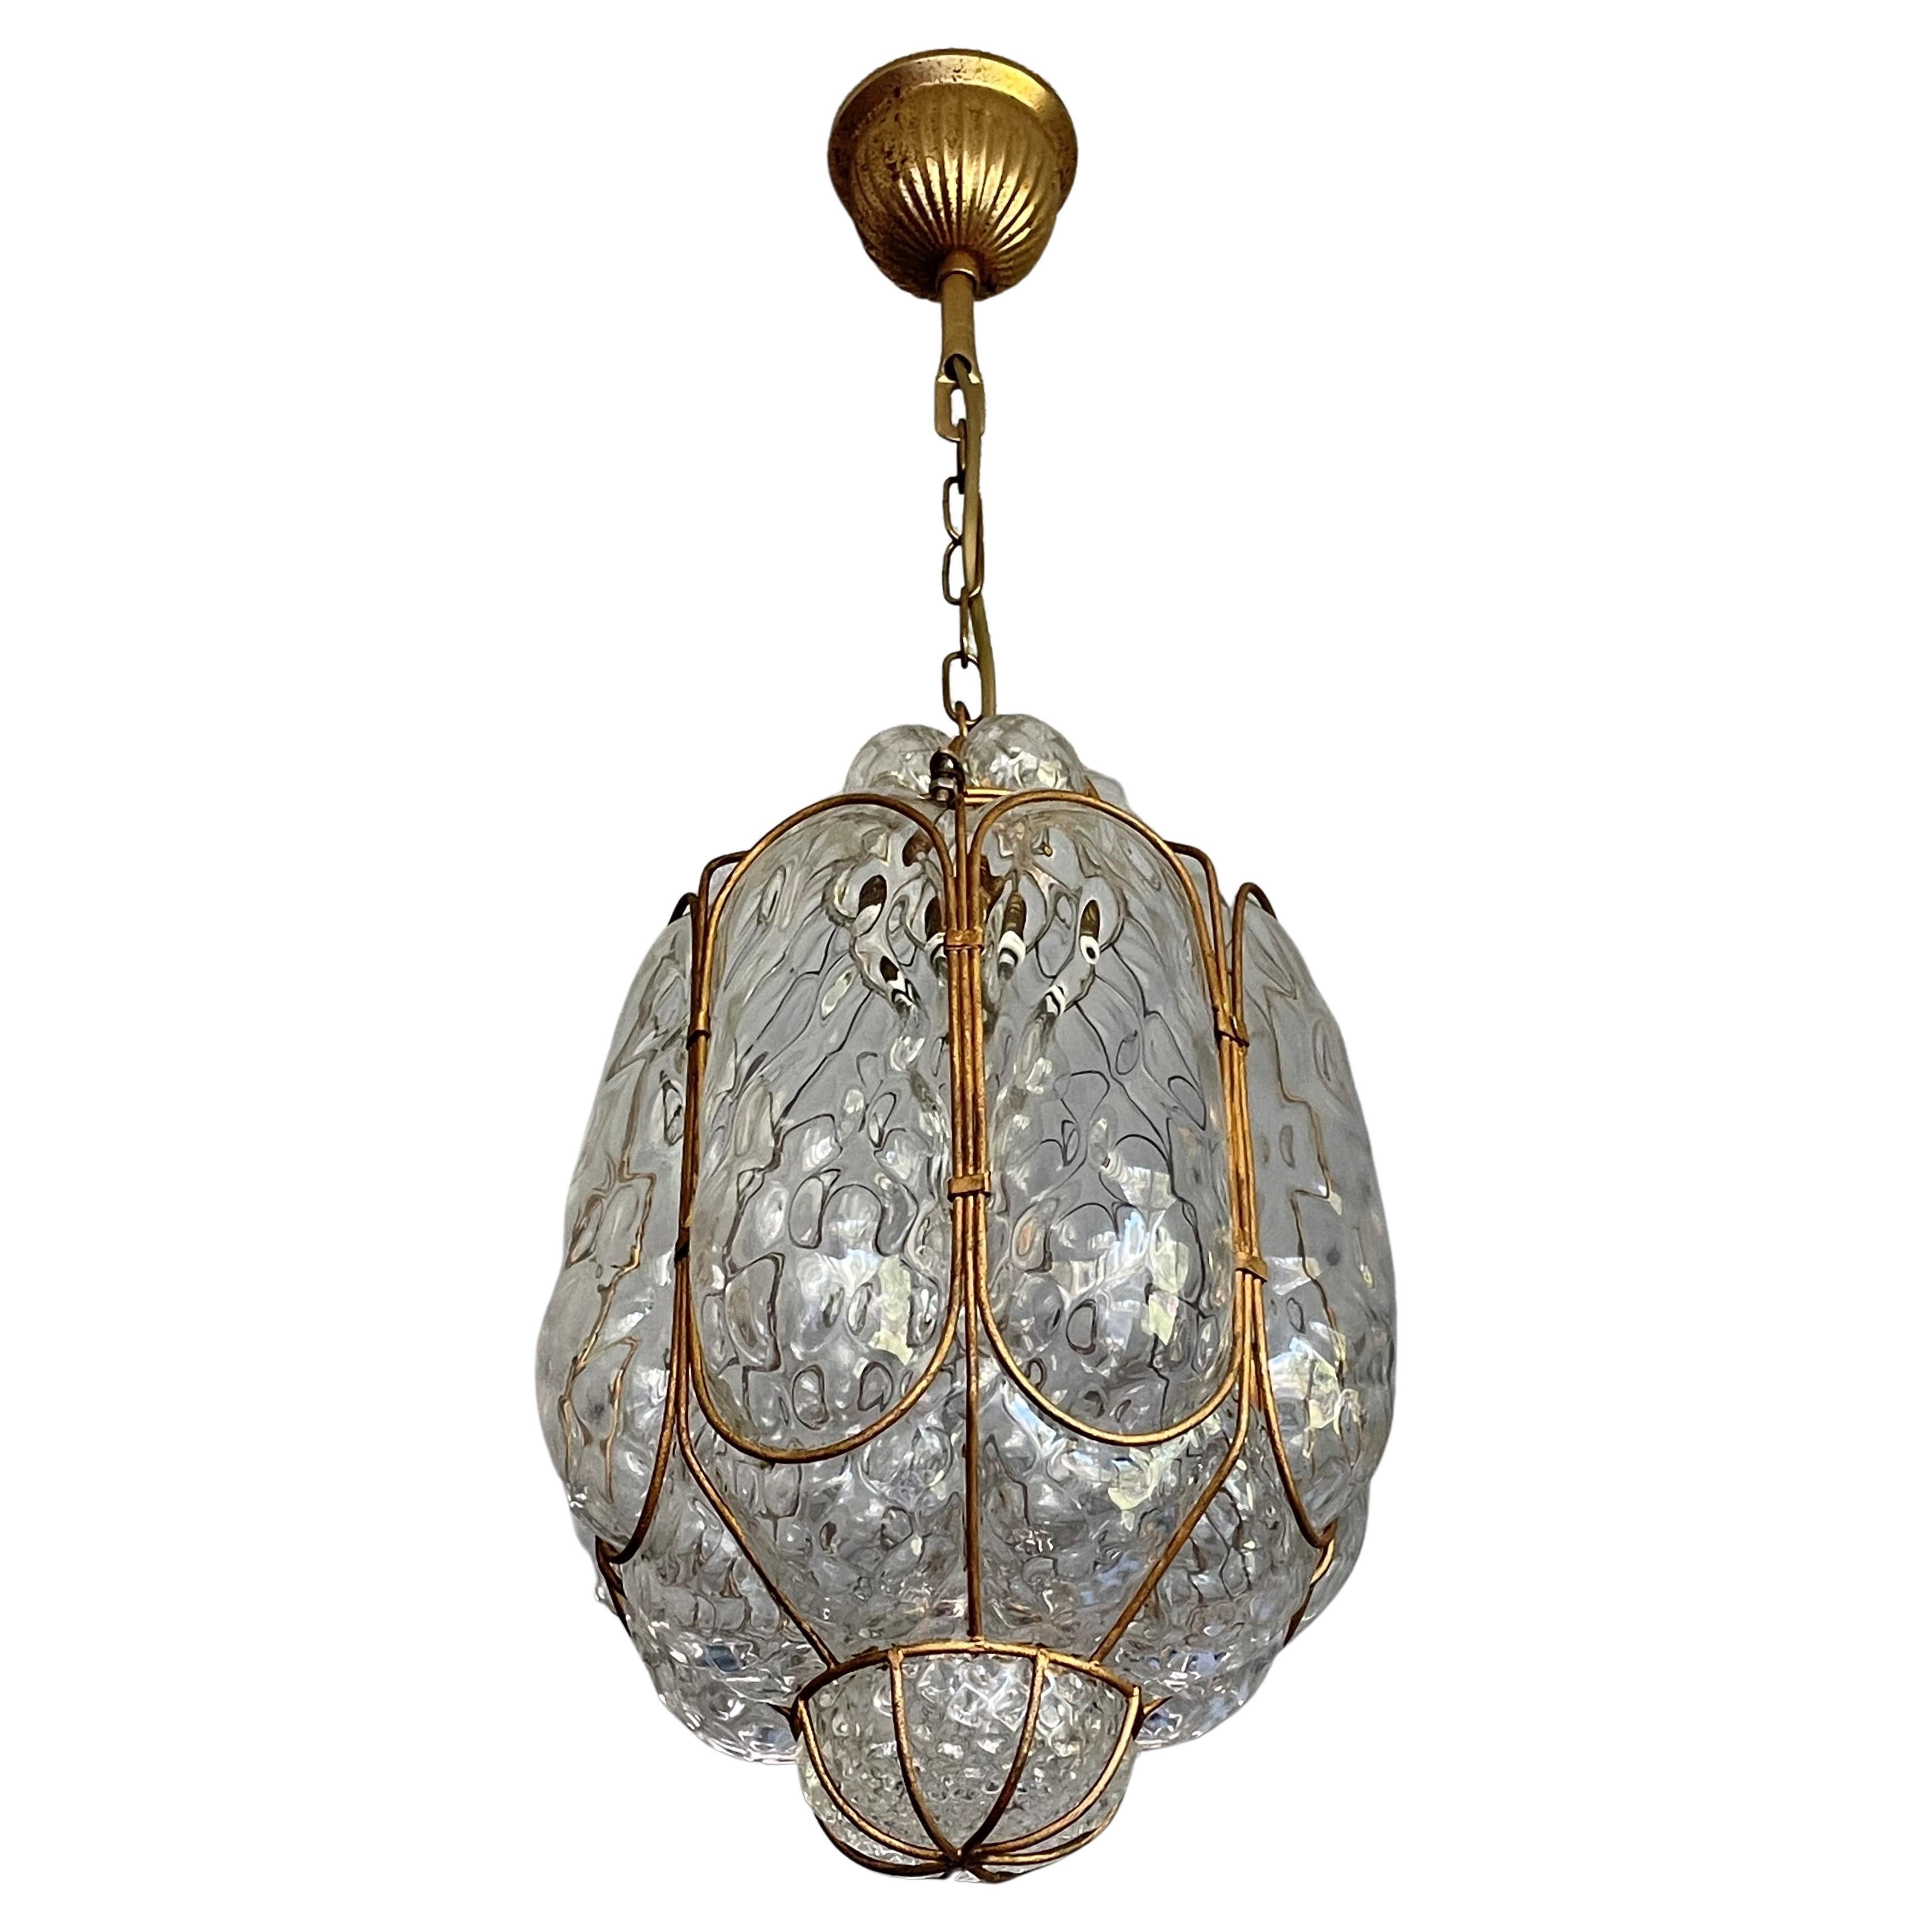 Unique Mouthblown Midcentury Venetian Murano Art Glass Pendant / Ceiling Light